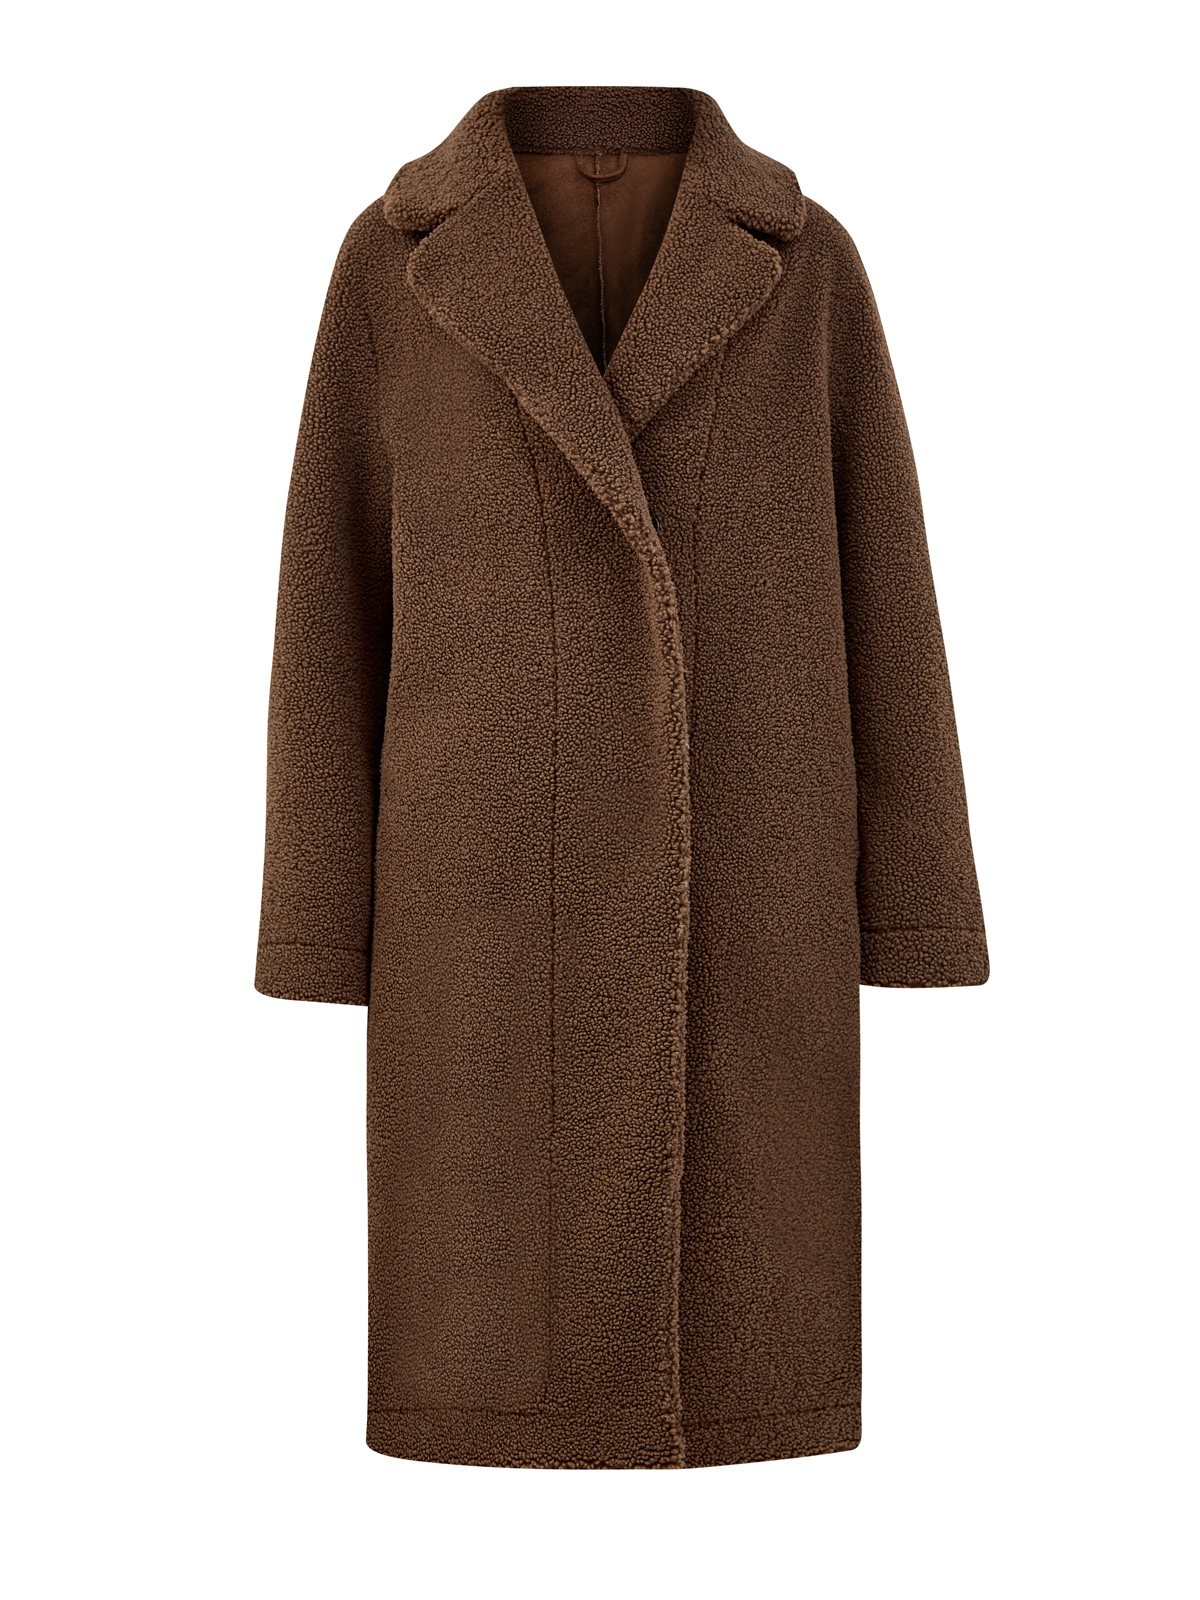 Удлиненное пальто Shannon из фактурного эко-меха HETREGO, цвет коричневый, размер M;L;XL